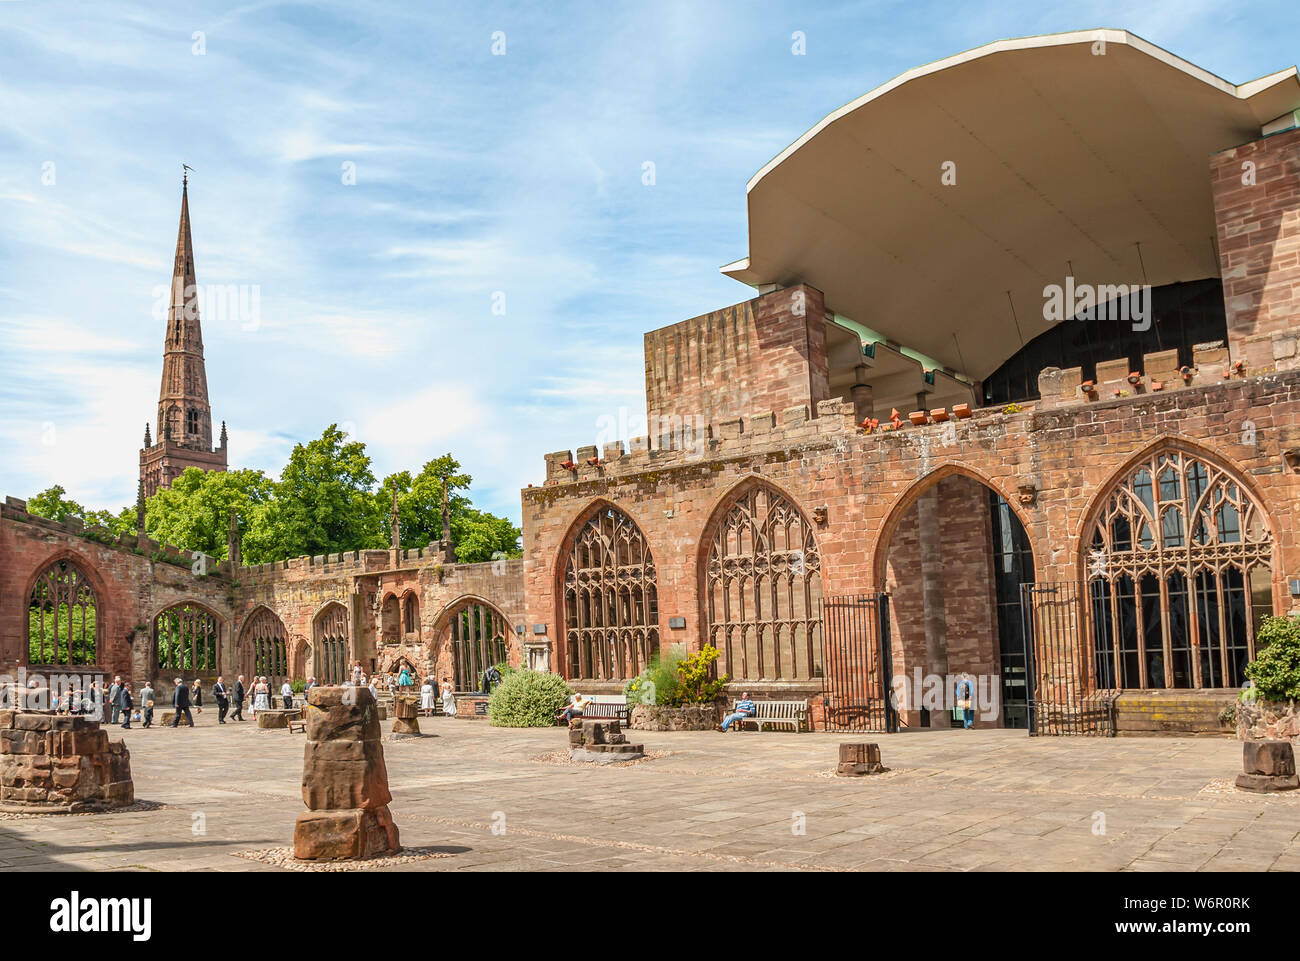 Ruines de la cathédrale de Coventry, également connue sous le nom de cathédrale Saint-Michel, West Midlands, Angleterre Banque D'Images